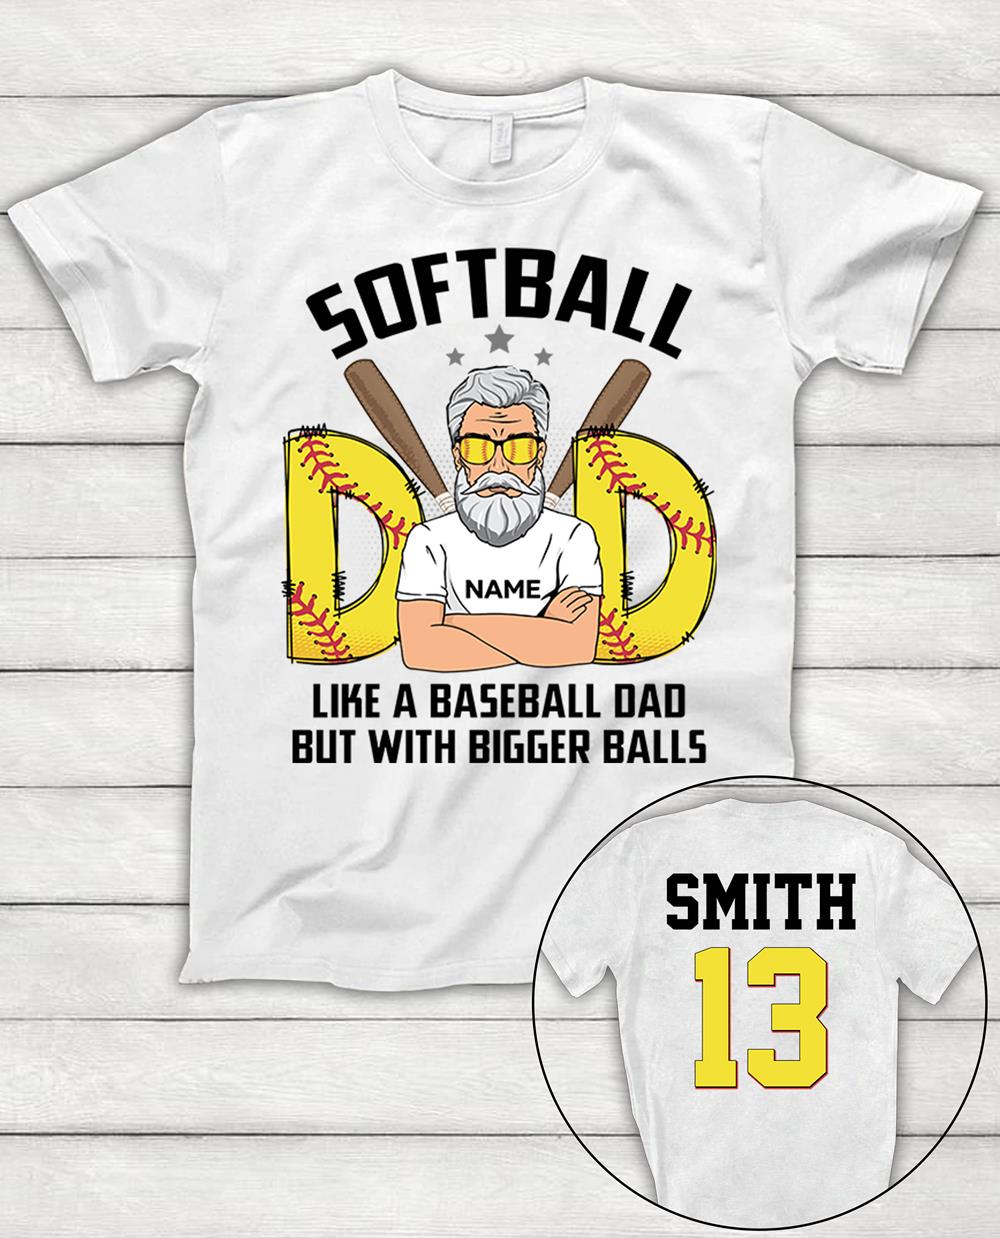 Custom Shirt Gift For Softball Dad - Personalized Gifts For Softball Daddy - Softball Shirt For Dad